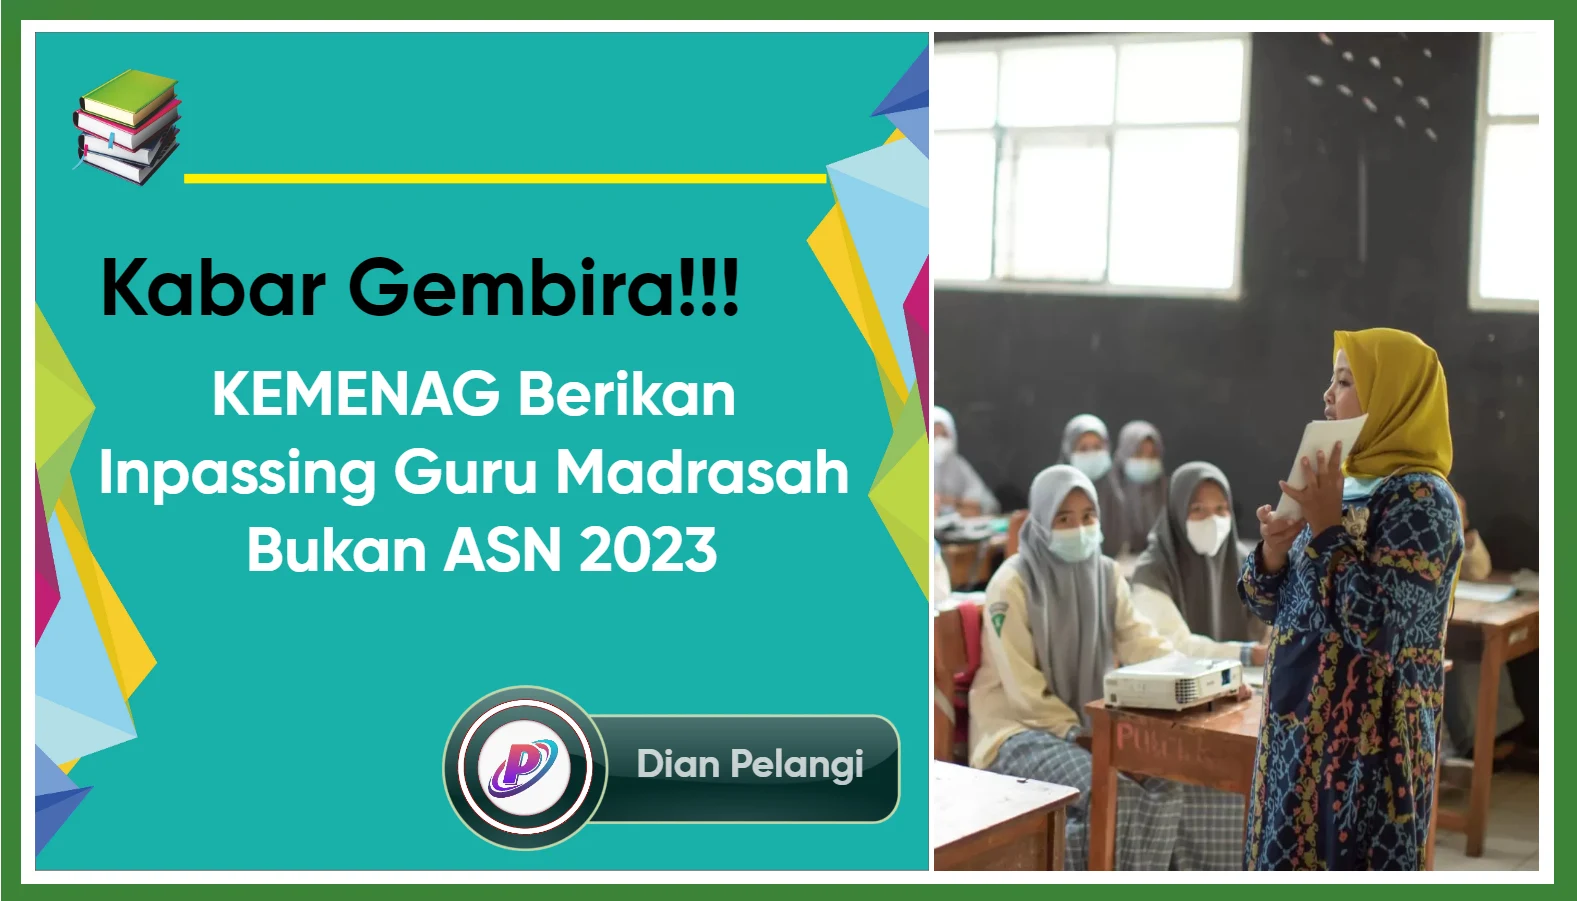 Kemenag Berikan Inpassing Guru Madrasah Bukan ASN 2023